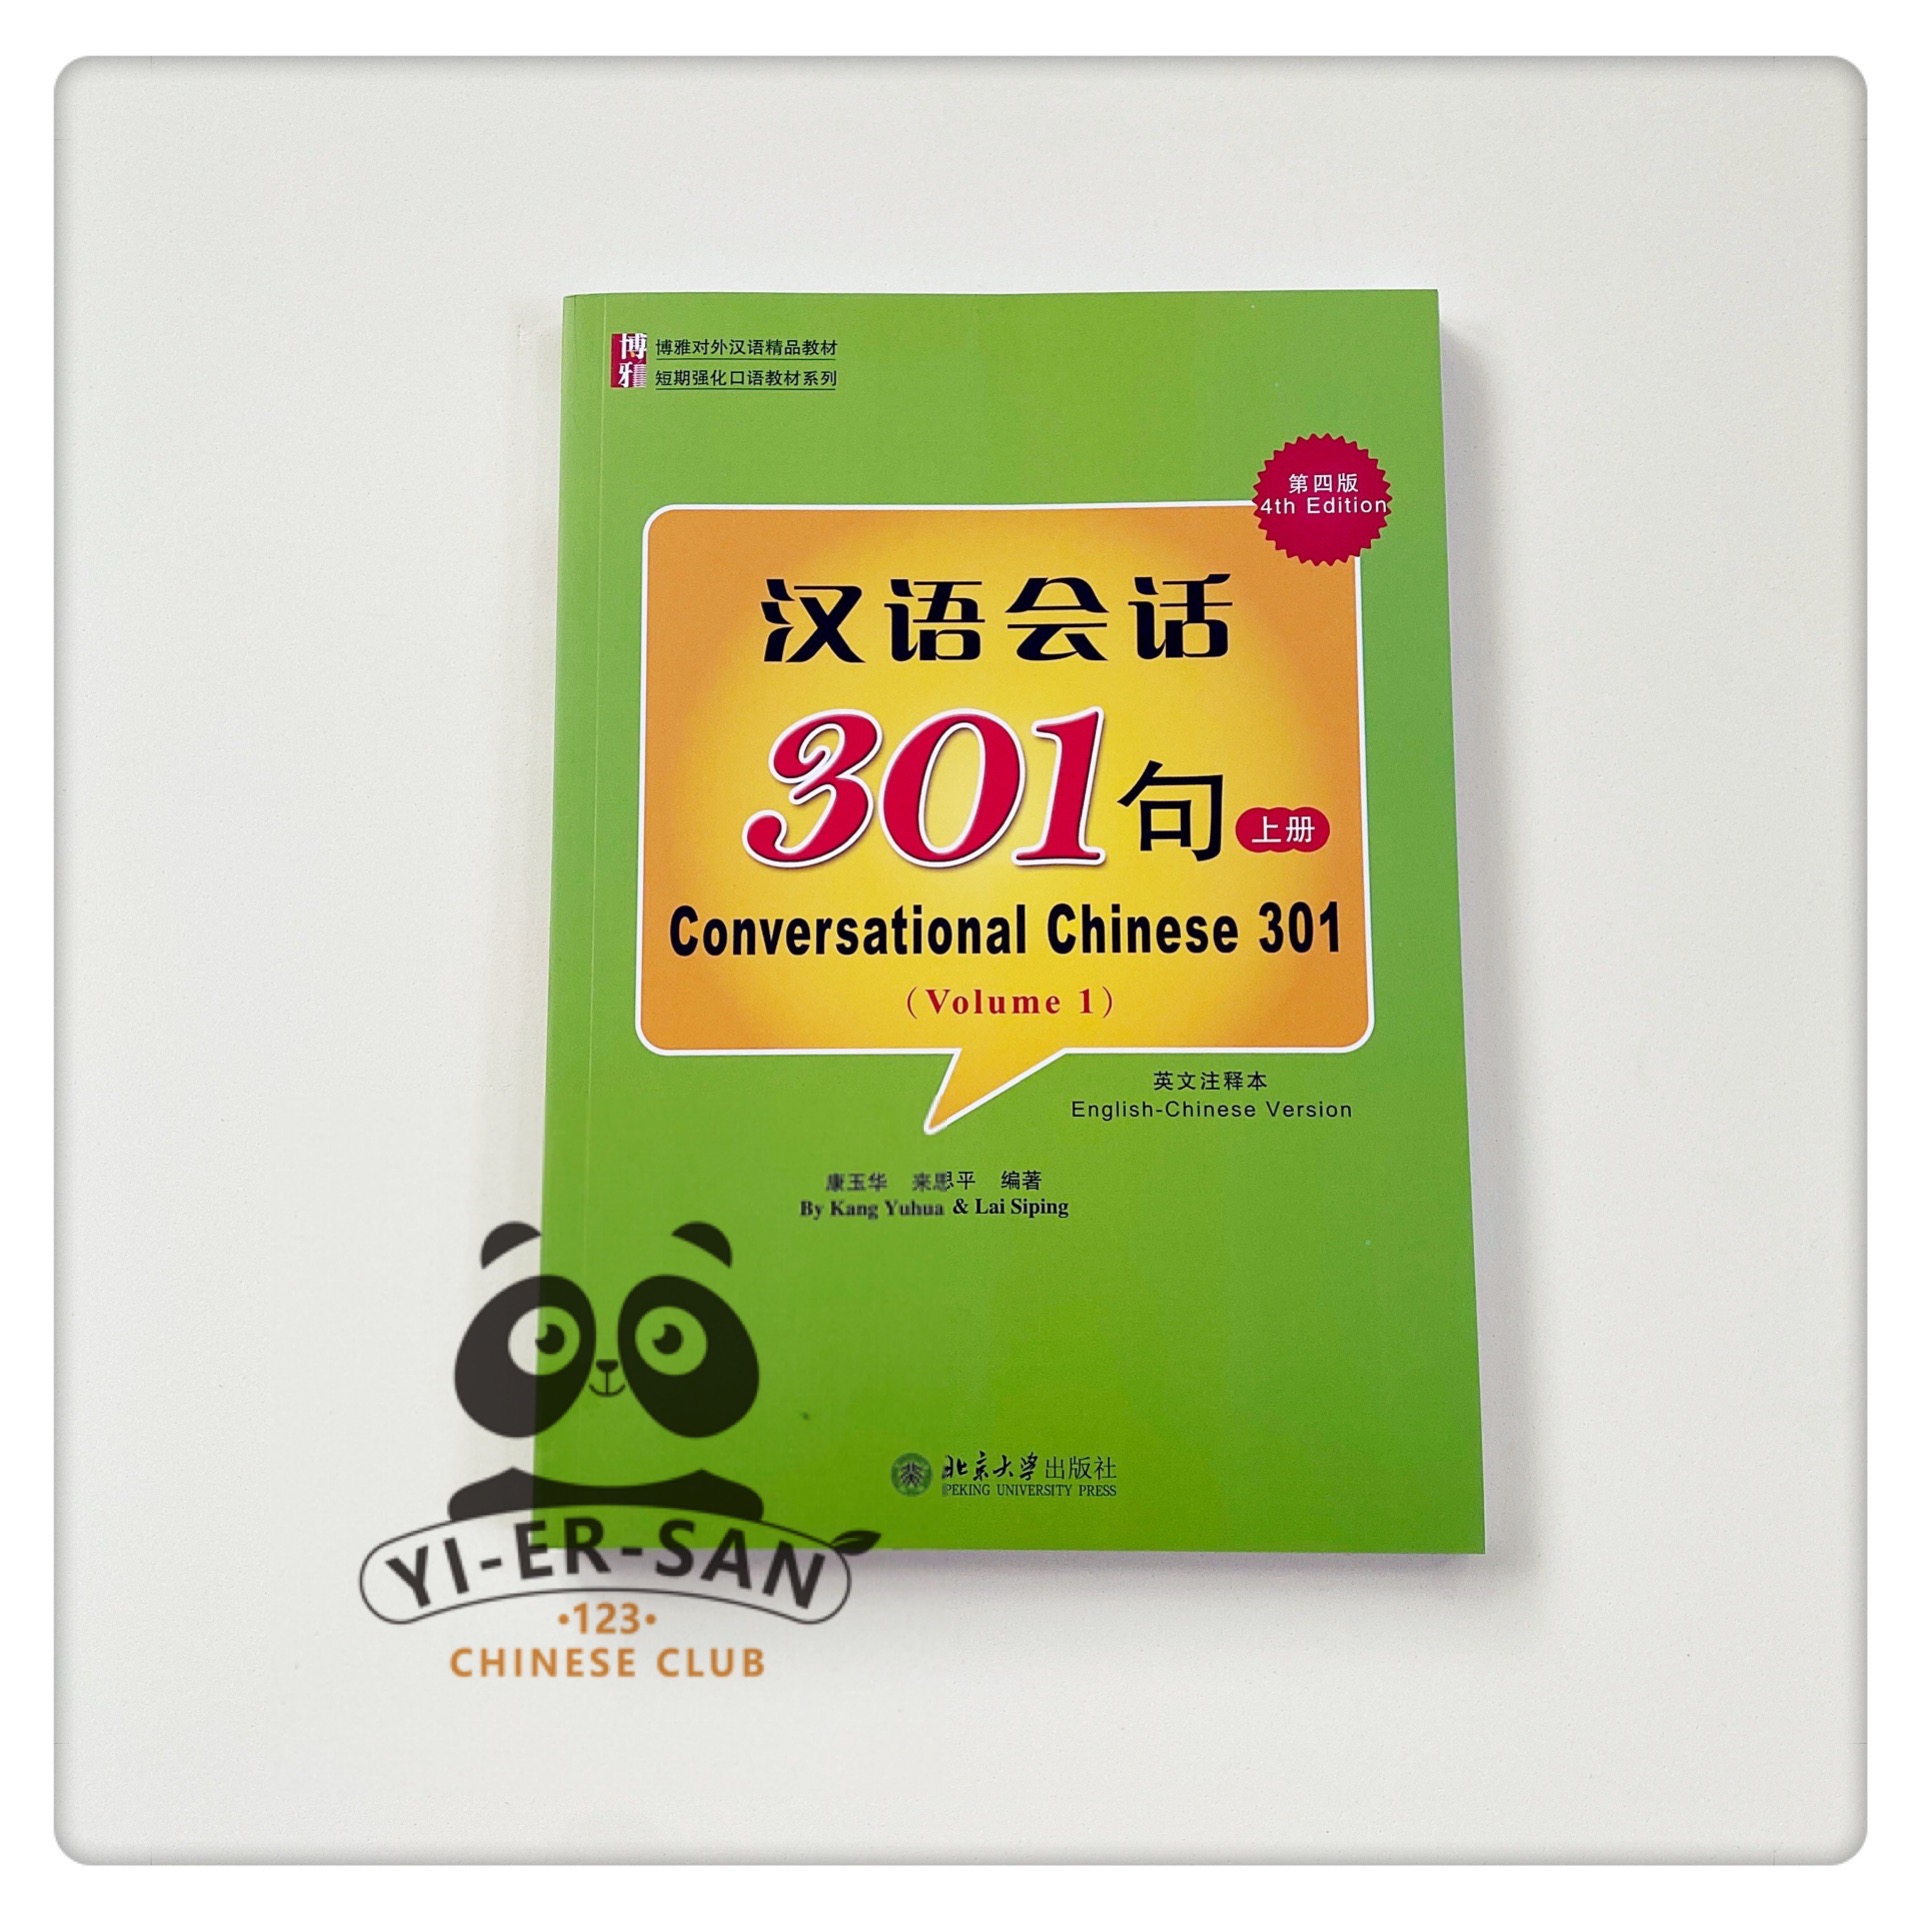 หนังสือเรียนบทสนทนาภาษาจีน เล่ม1  Conversational Chinese 301 Volume1《汉语会话301ประโยค 上册》